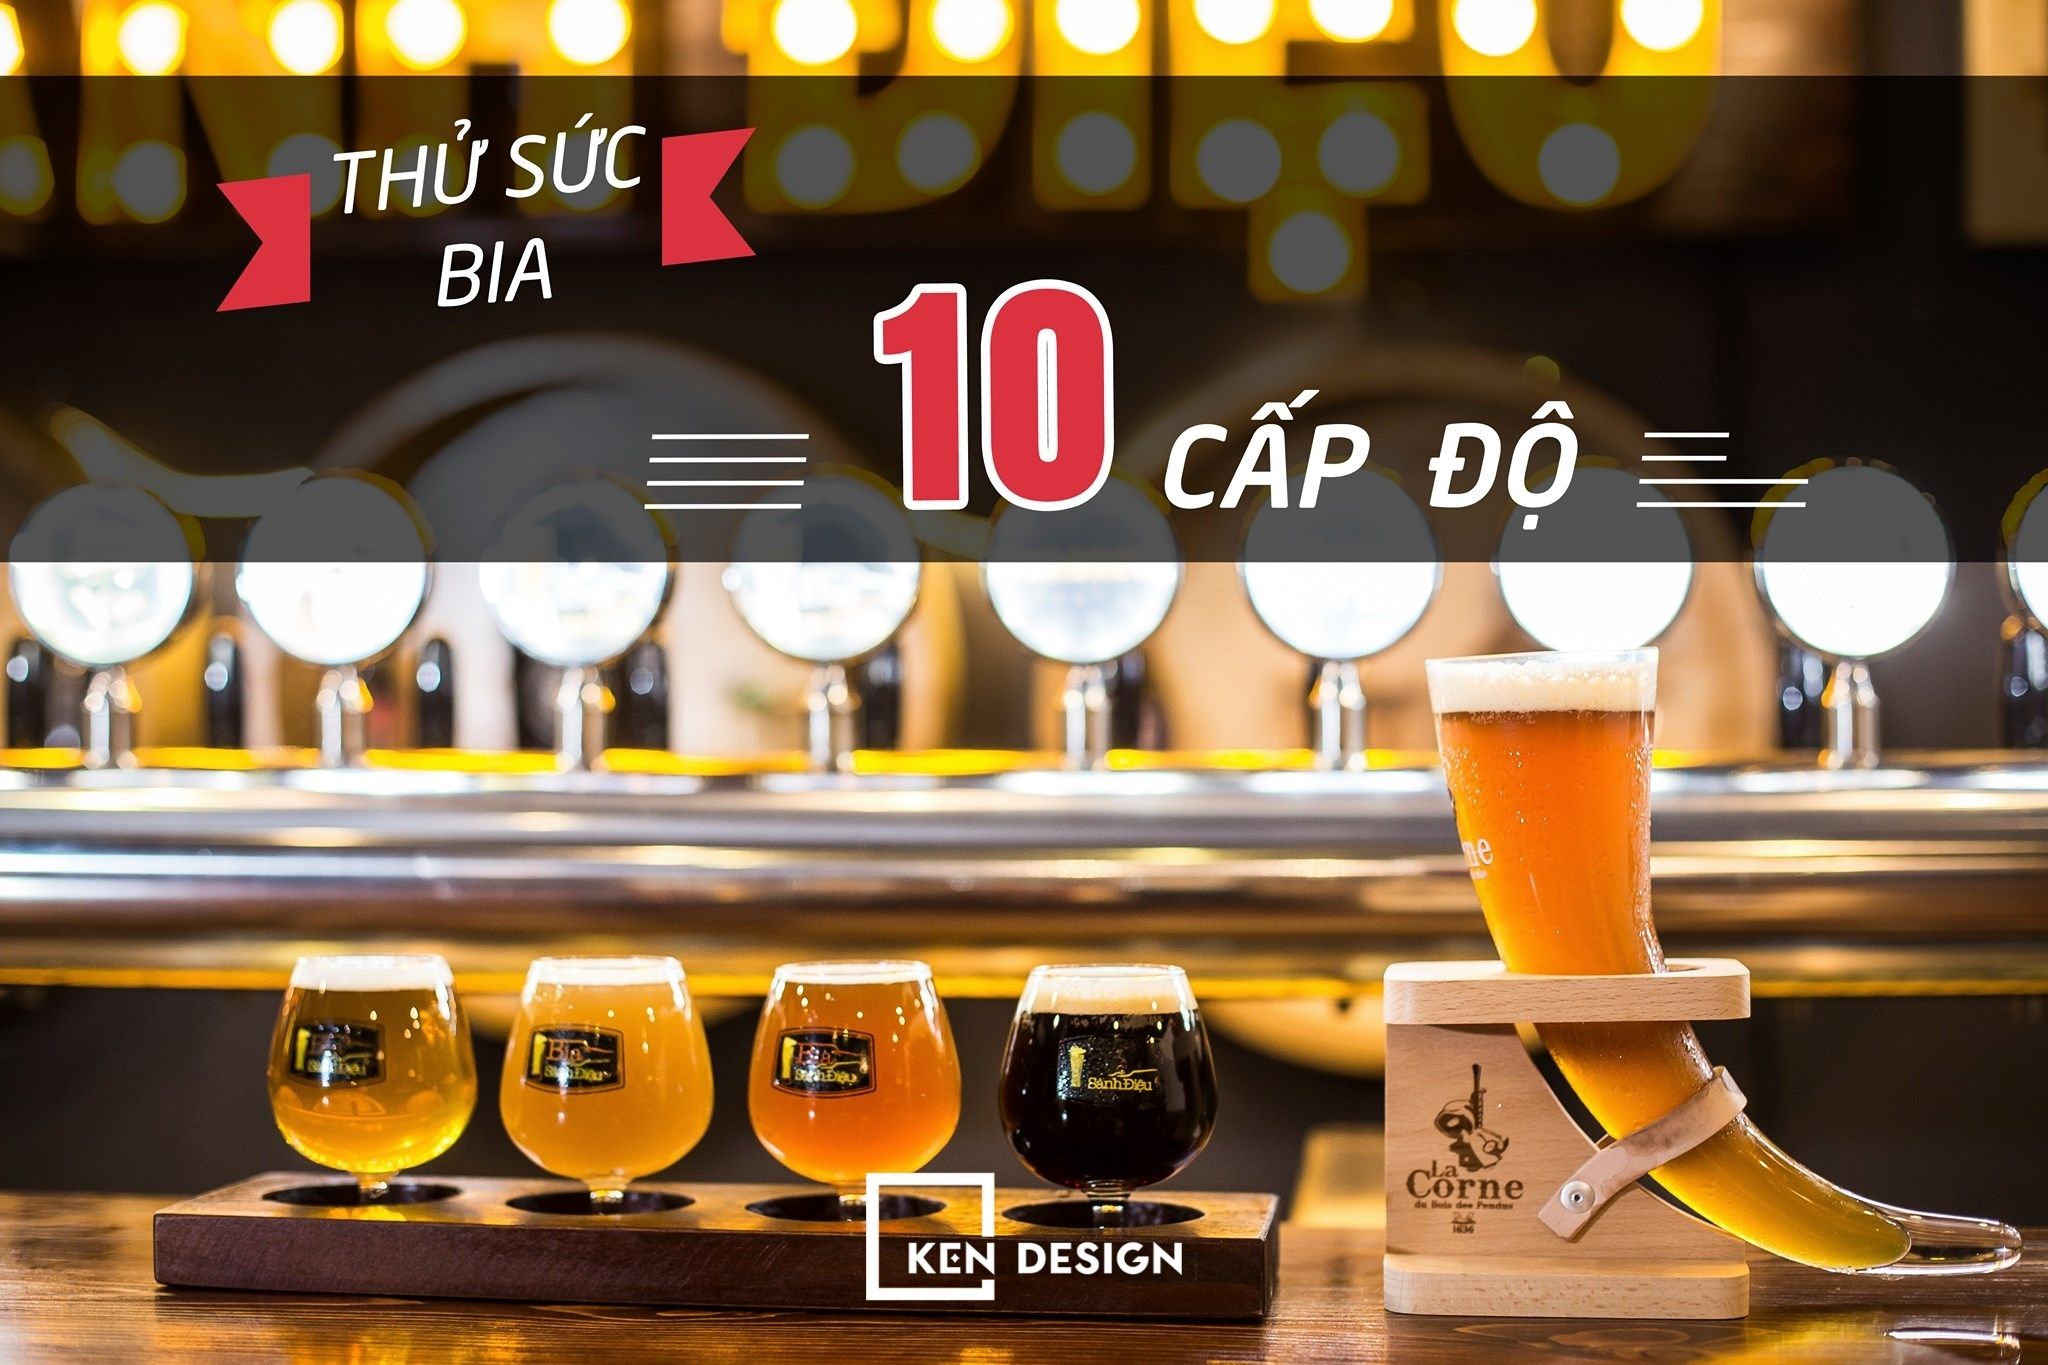 Xu hướng thiết kế nhà hàng bia